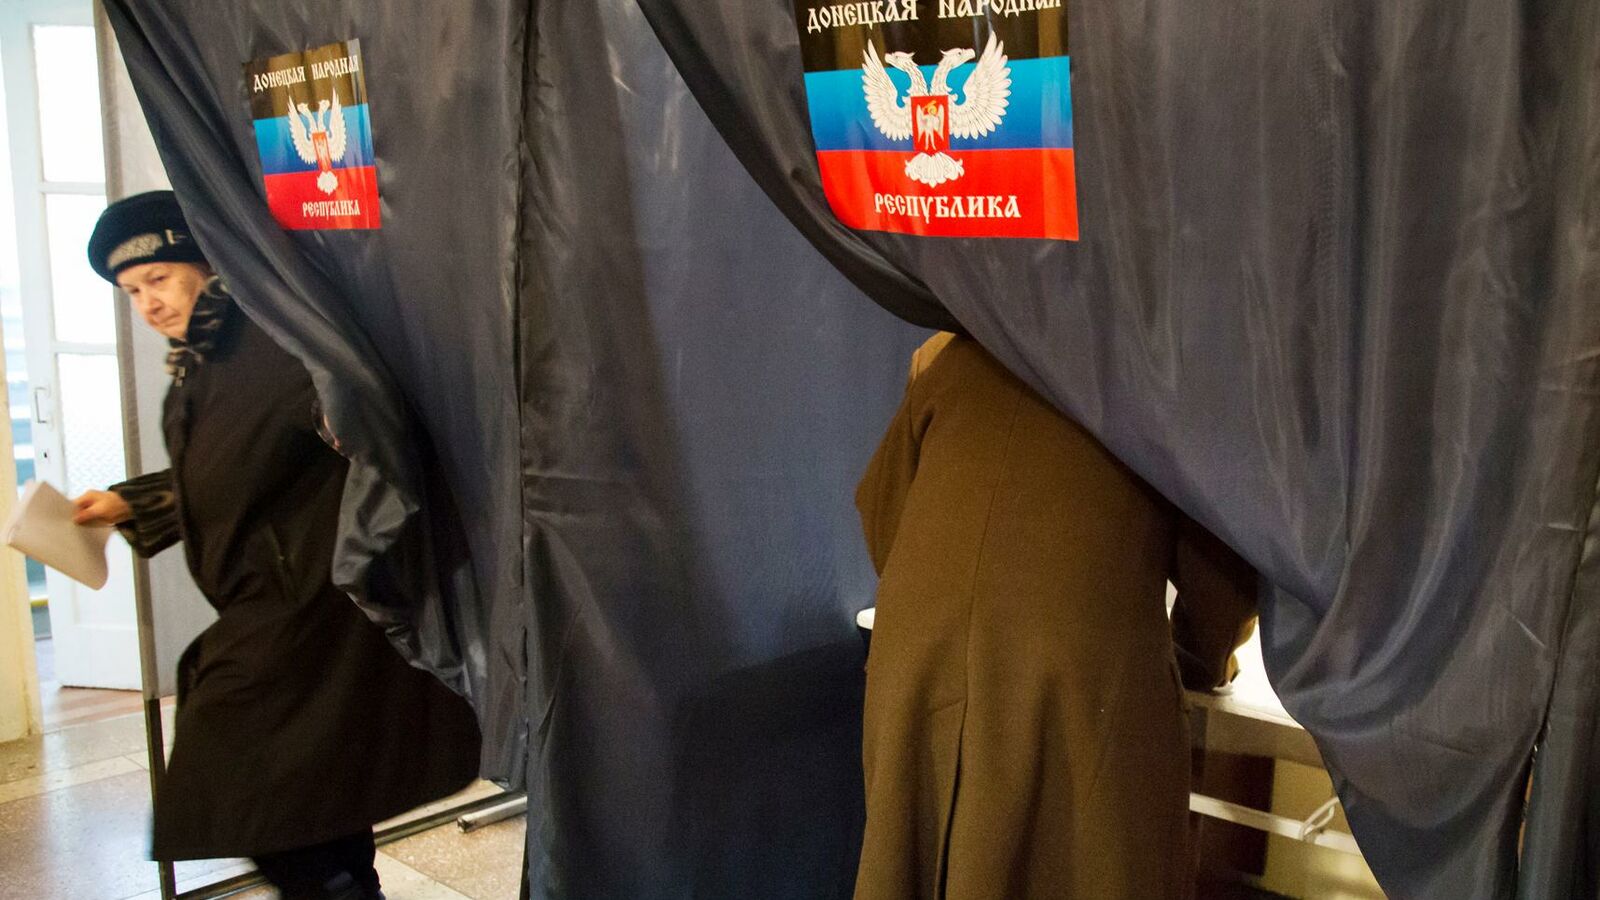 Πρόωρη ψηφοφορία για πρόεδρο της Ρωσίας στα κατεχόμενα Ουκρανικά Εδάφη. Όσοι αρνηθούν να ψηφίσουν θα γίνουν ξένοι πολίτες ή απάτριδες